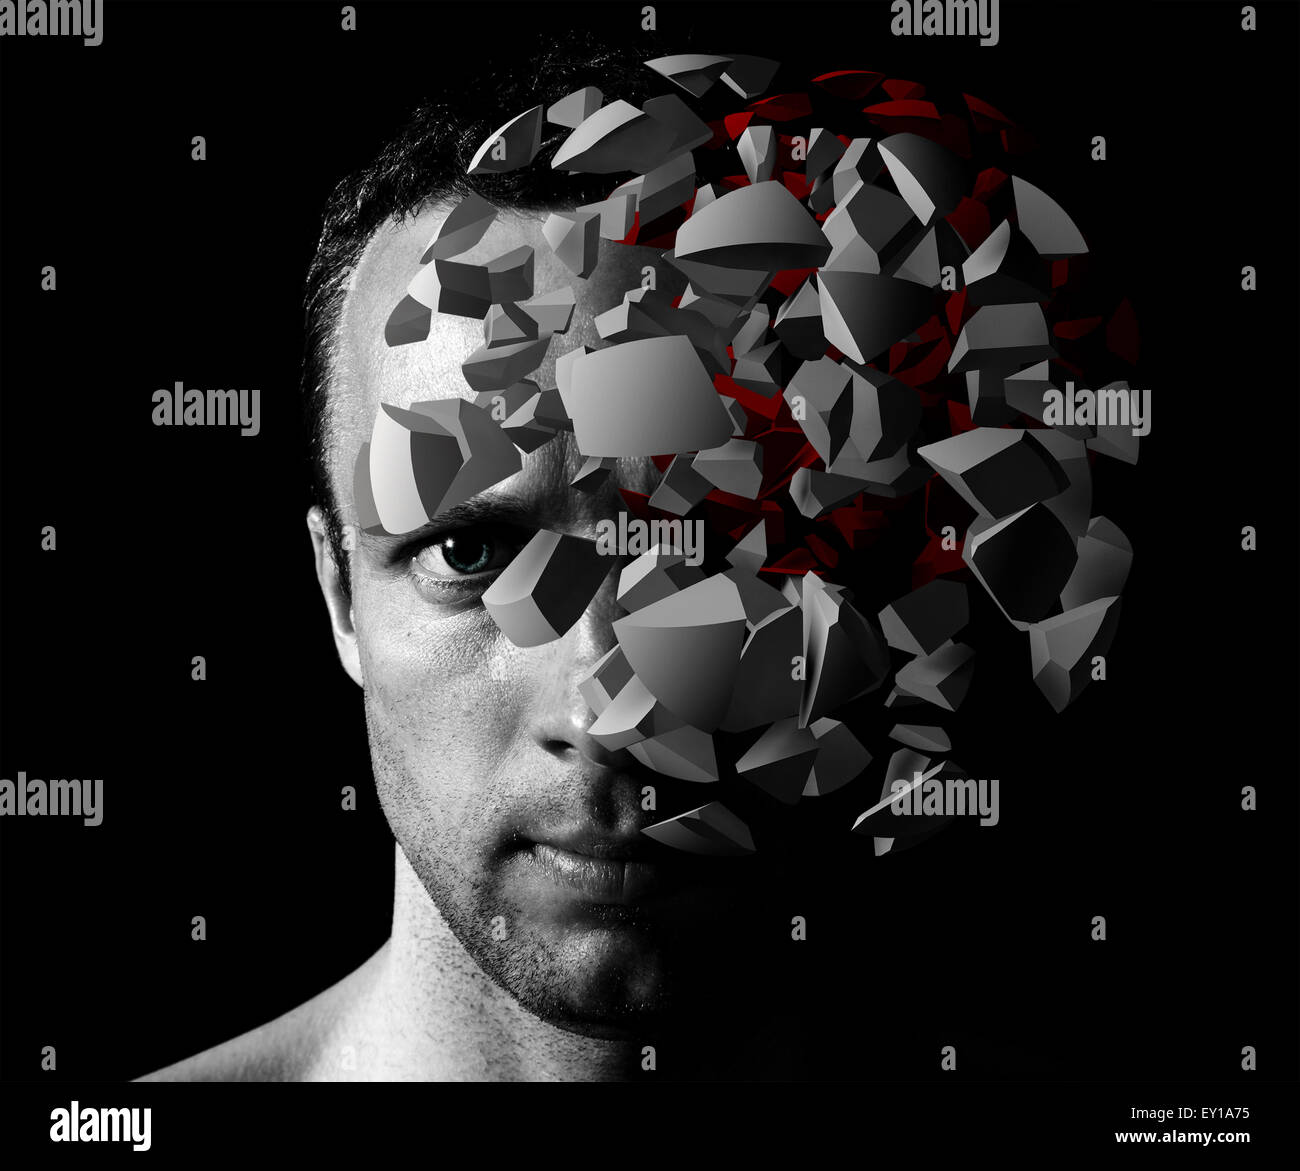 Hombre caucásico retrato creativo 3D con los fragmentos de explosión sobre fondo negro Foto de stock